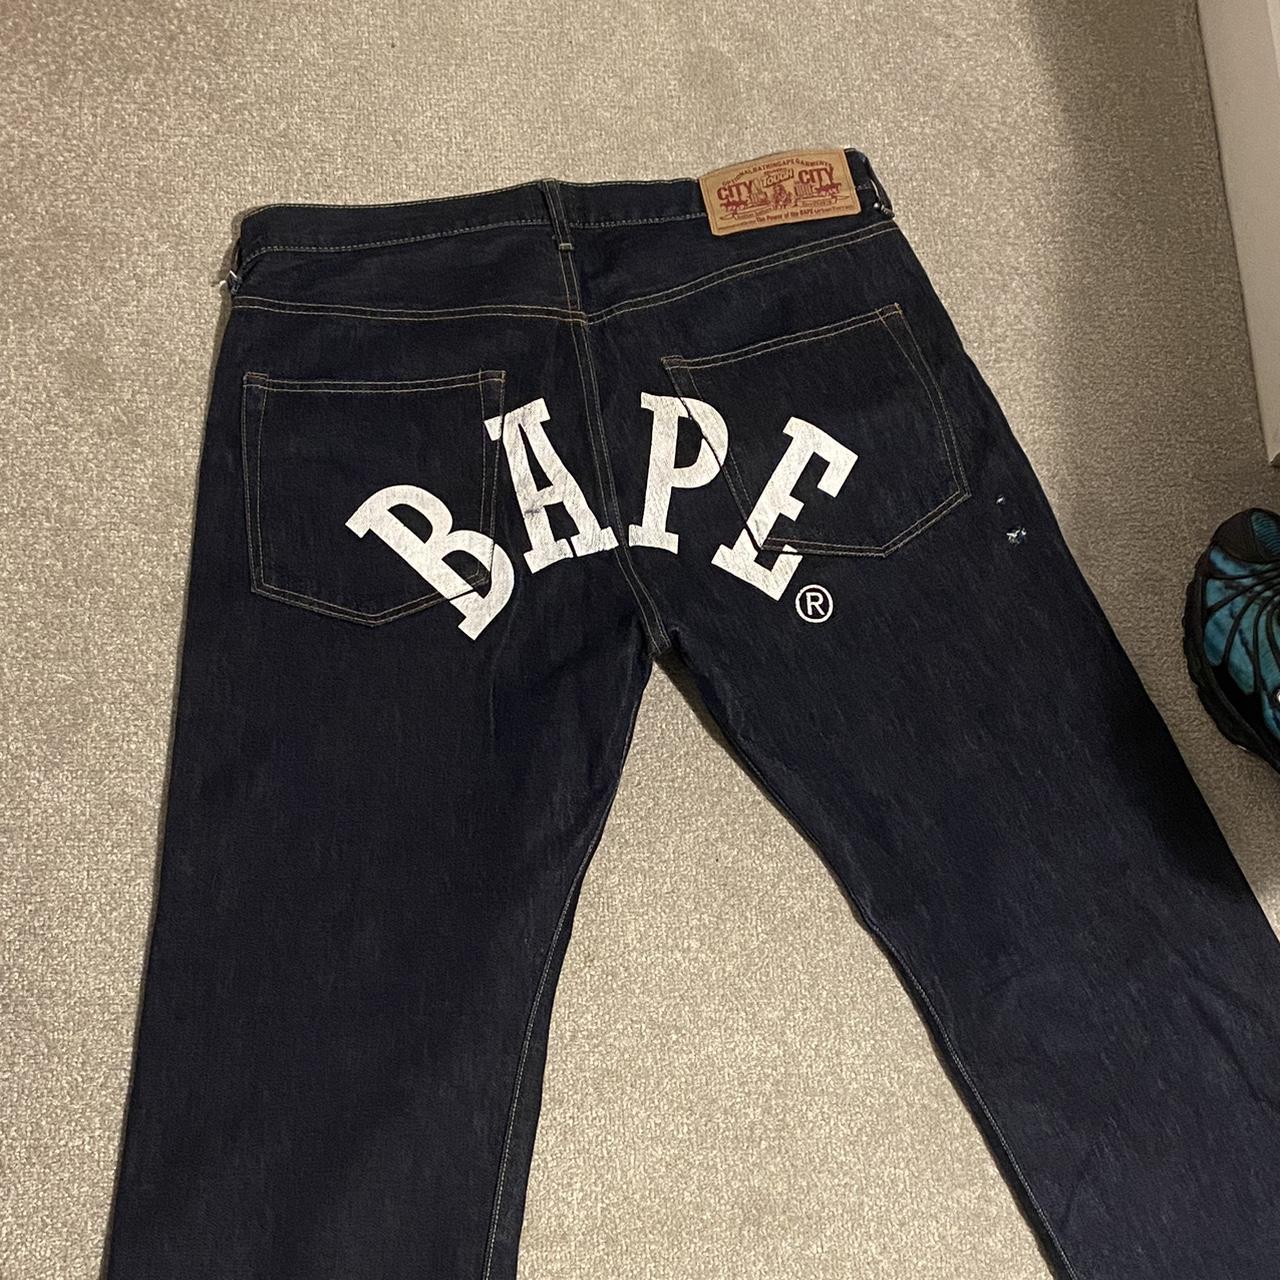 Bape jeans waist 34 Baggy fit #bape #y2k... - Depop